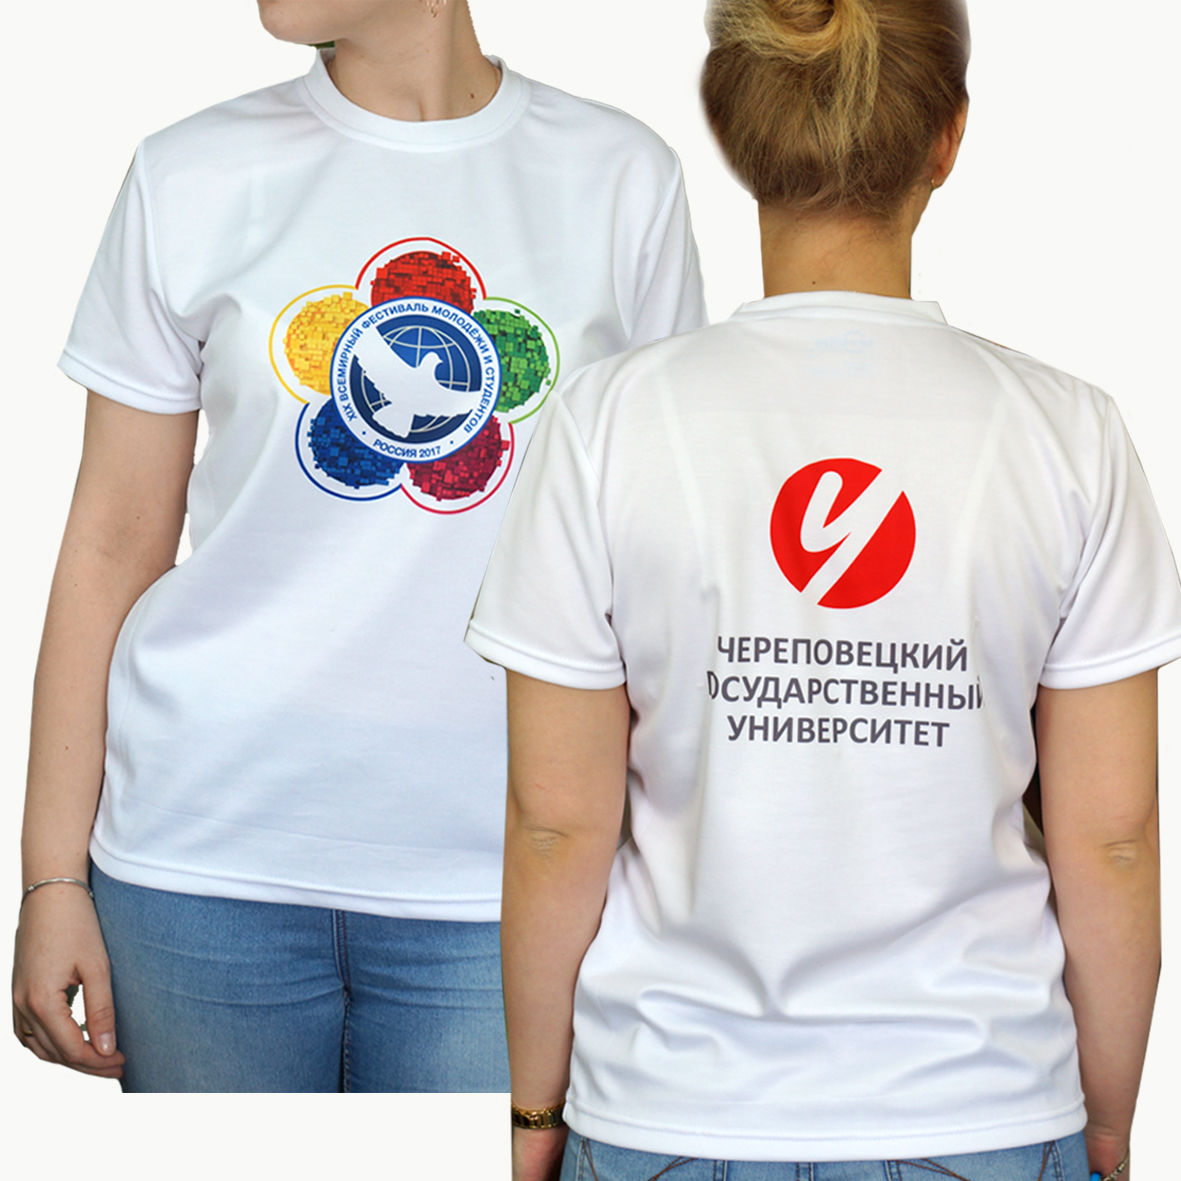 Фото на футболки на заказ в москве